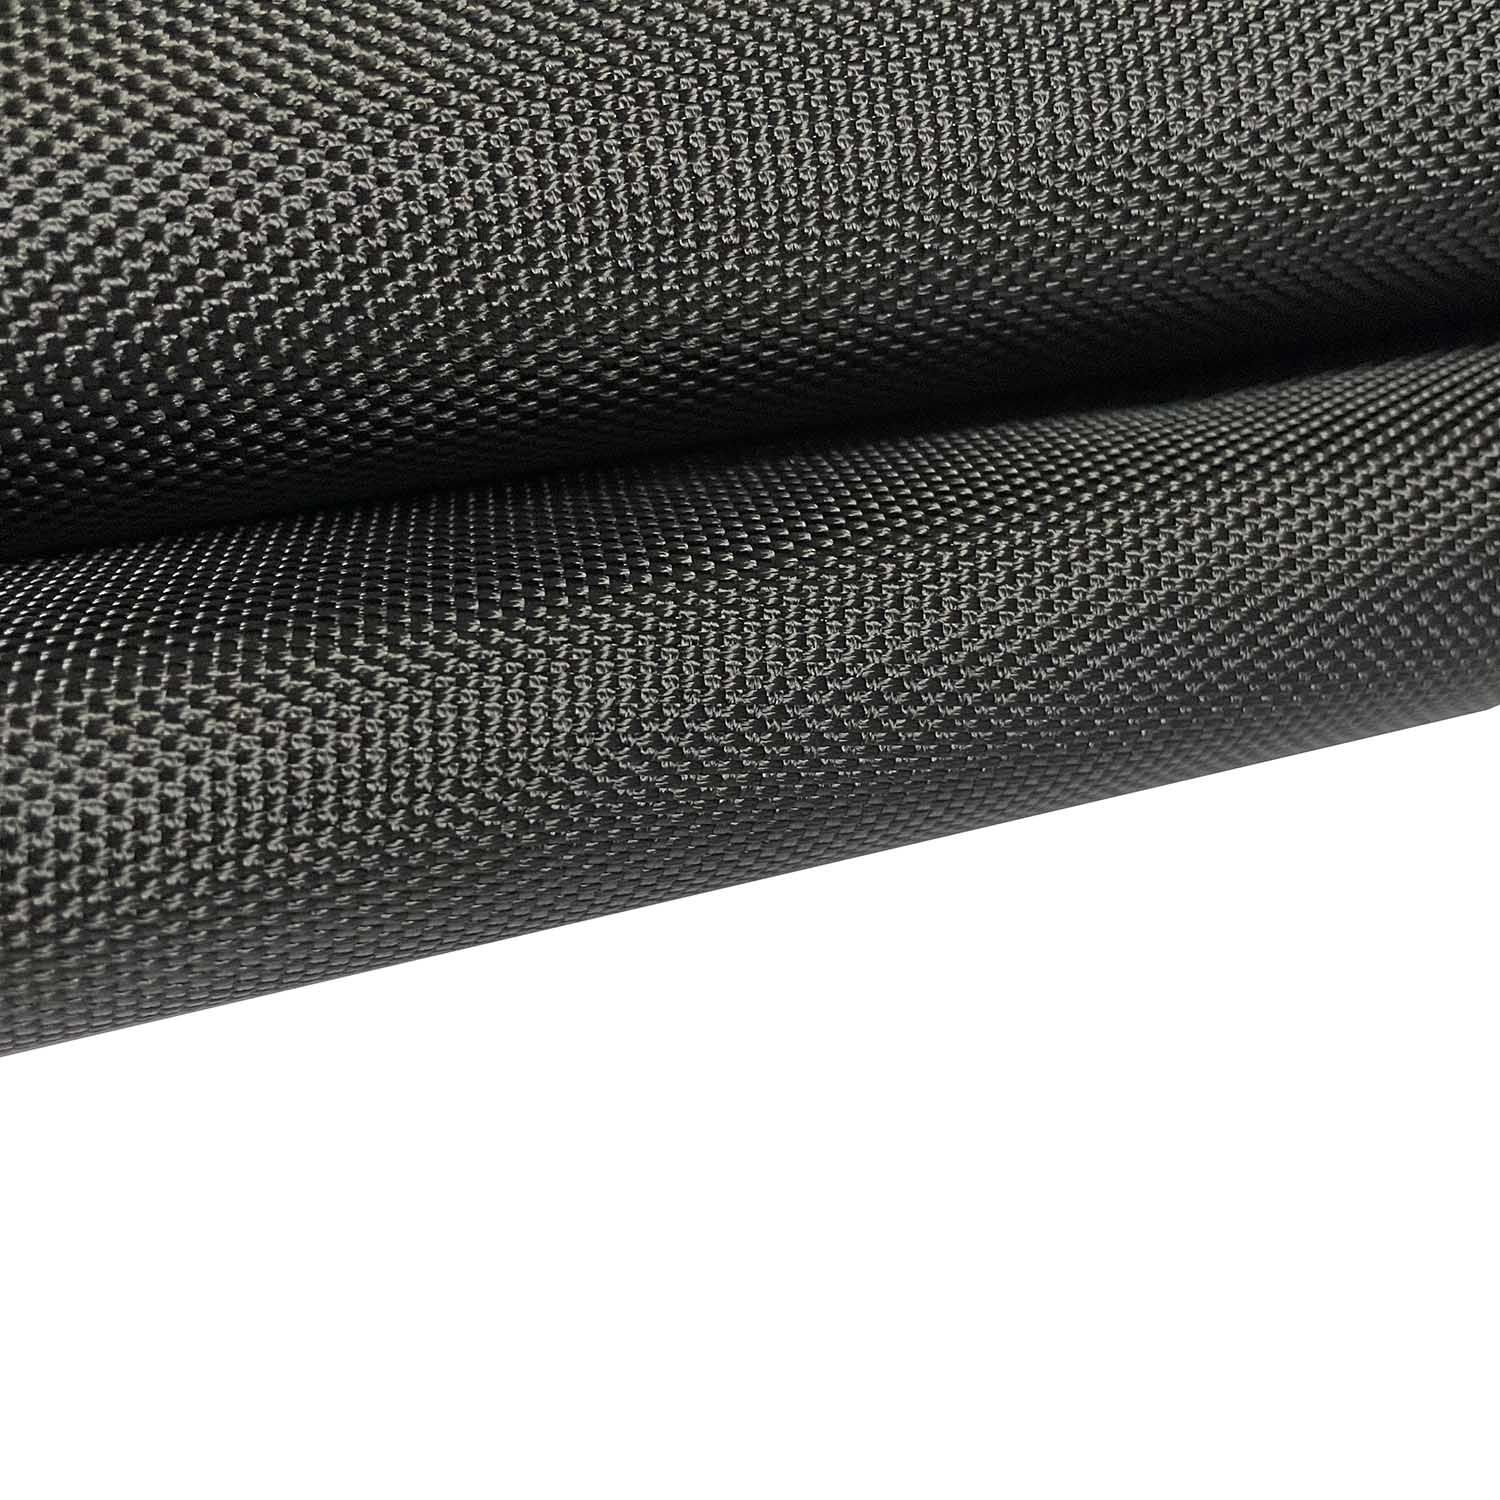 1680D polyester oxford-tyg med PVC-belagd för kameraväska